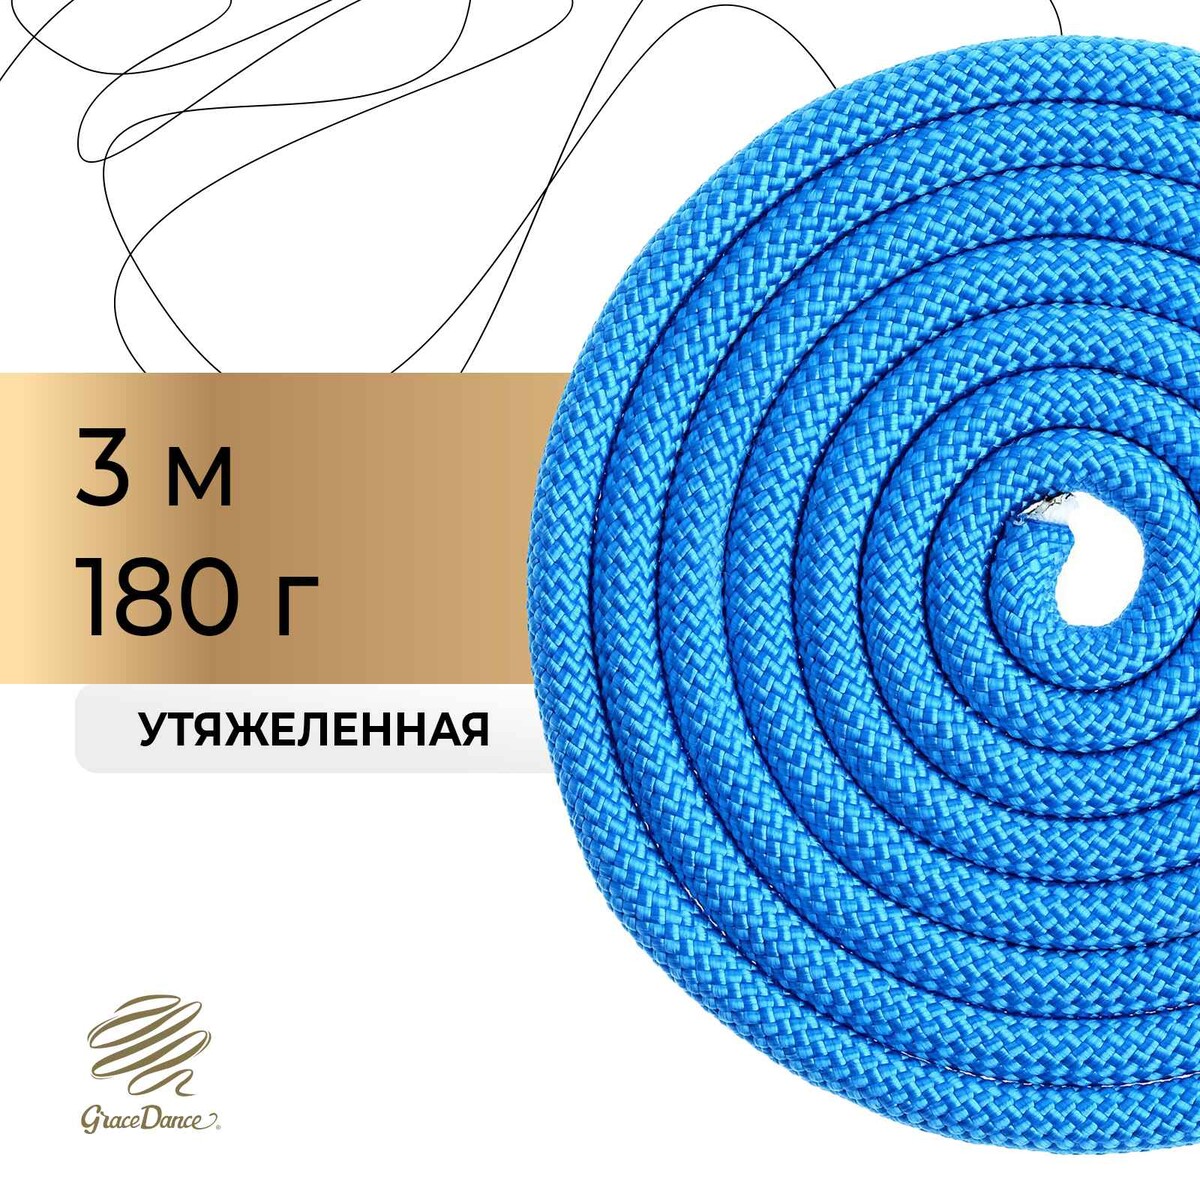 Скакалка для художественной гимнастики утяжеленная grace dance, 3 м, цвет синий скакалка со счетчиком 280см sportex e32627 1 синий